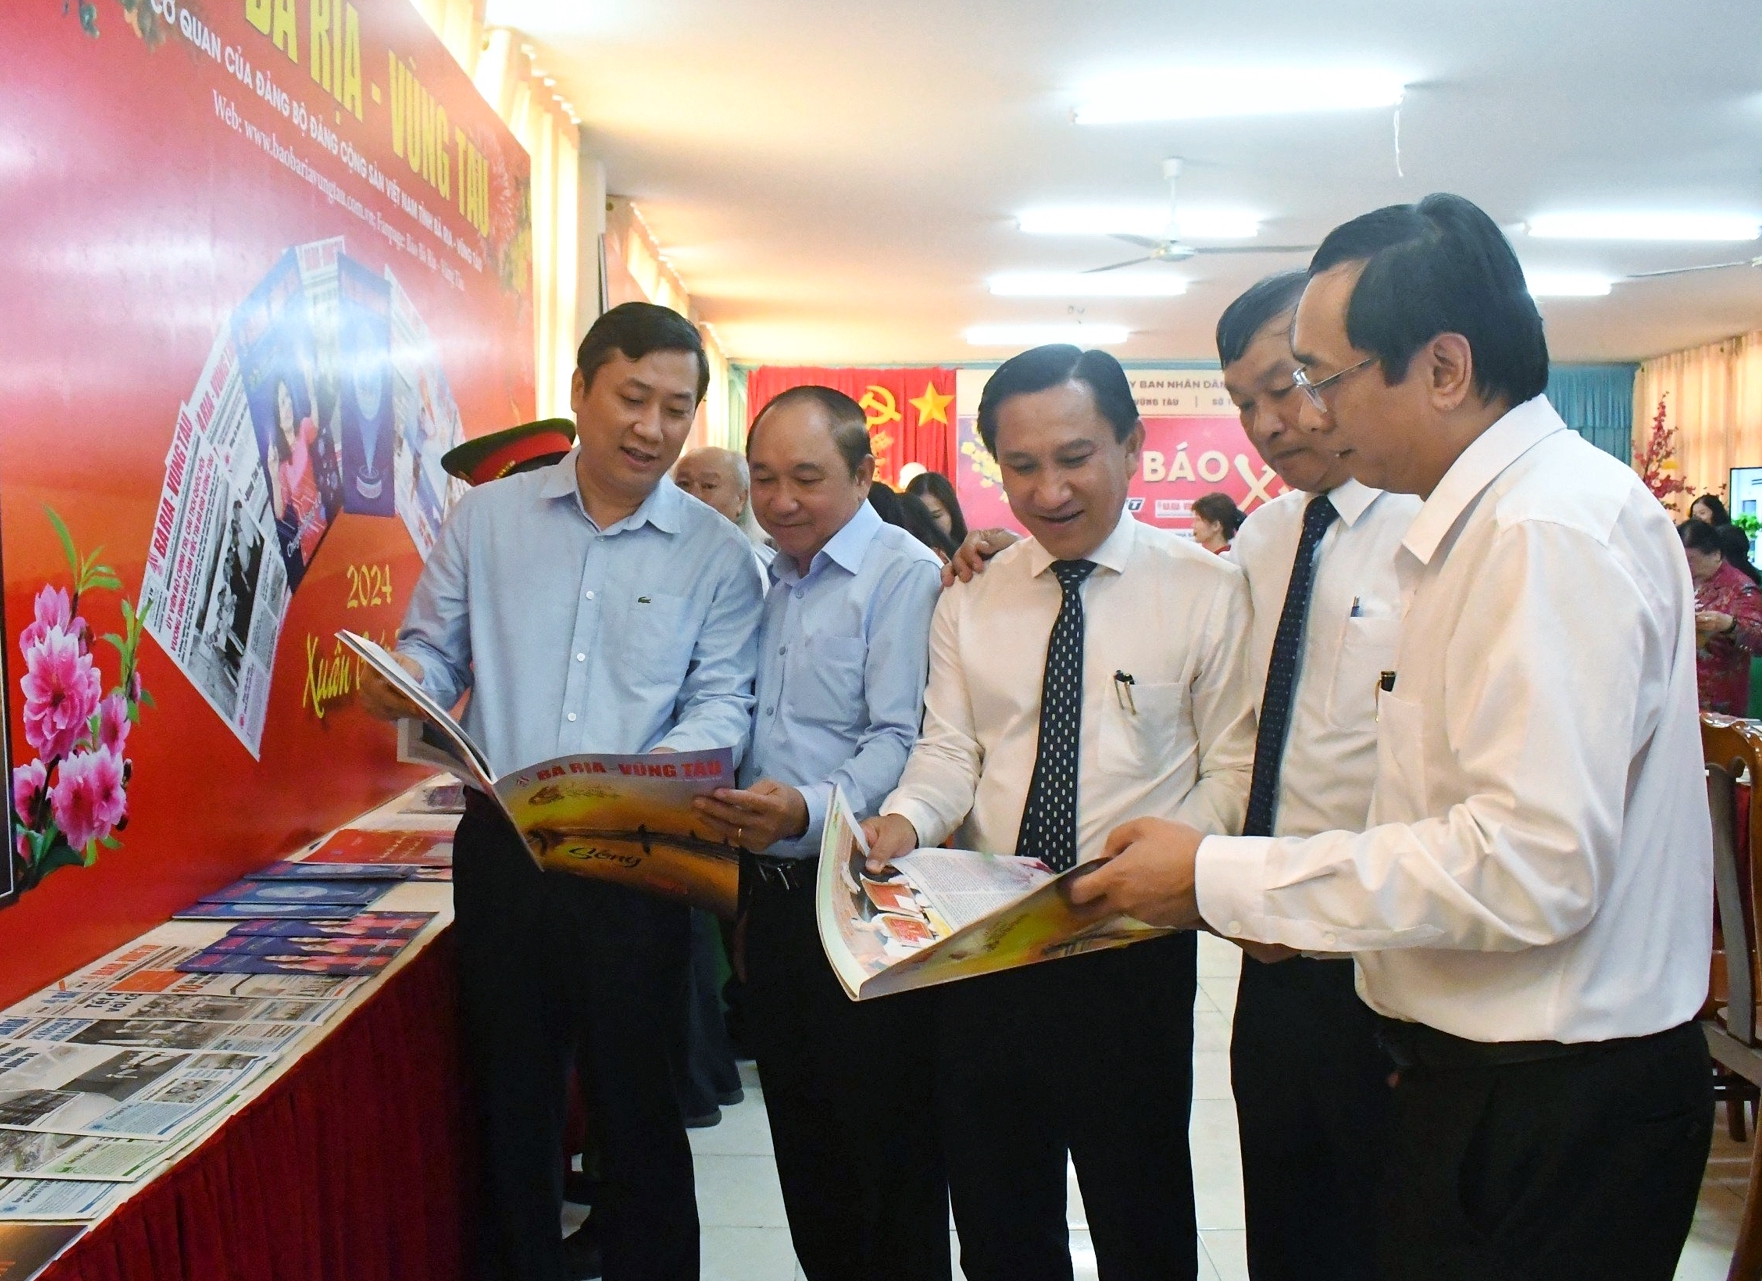 Các đại biểu đọc ấn phẩm Xuân tại gian trưng bày Báo Bà Rịa - Vũng Tàu.